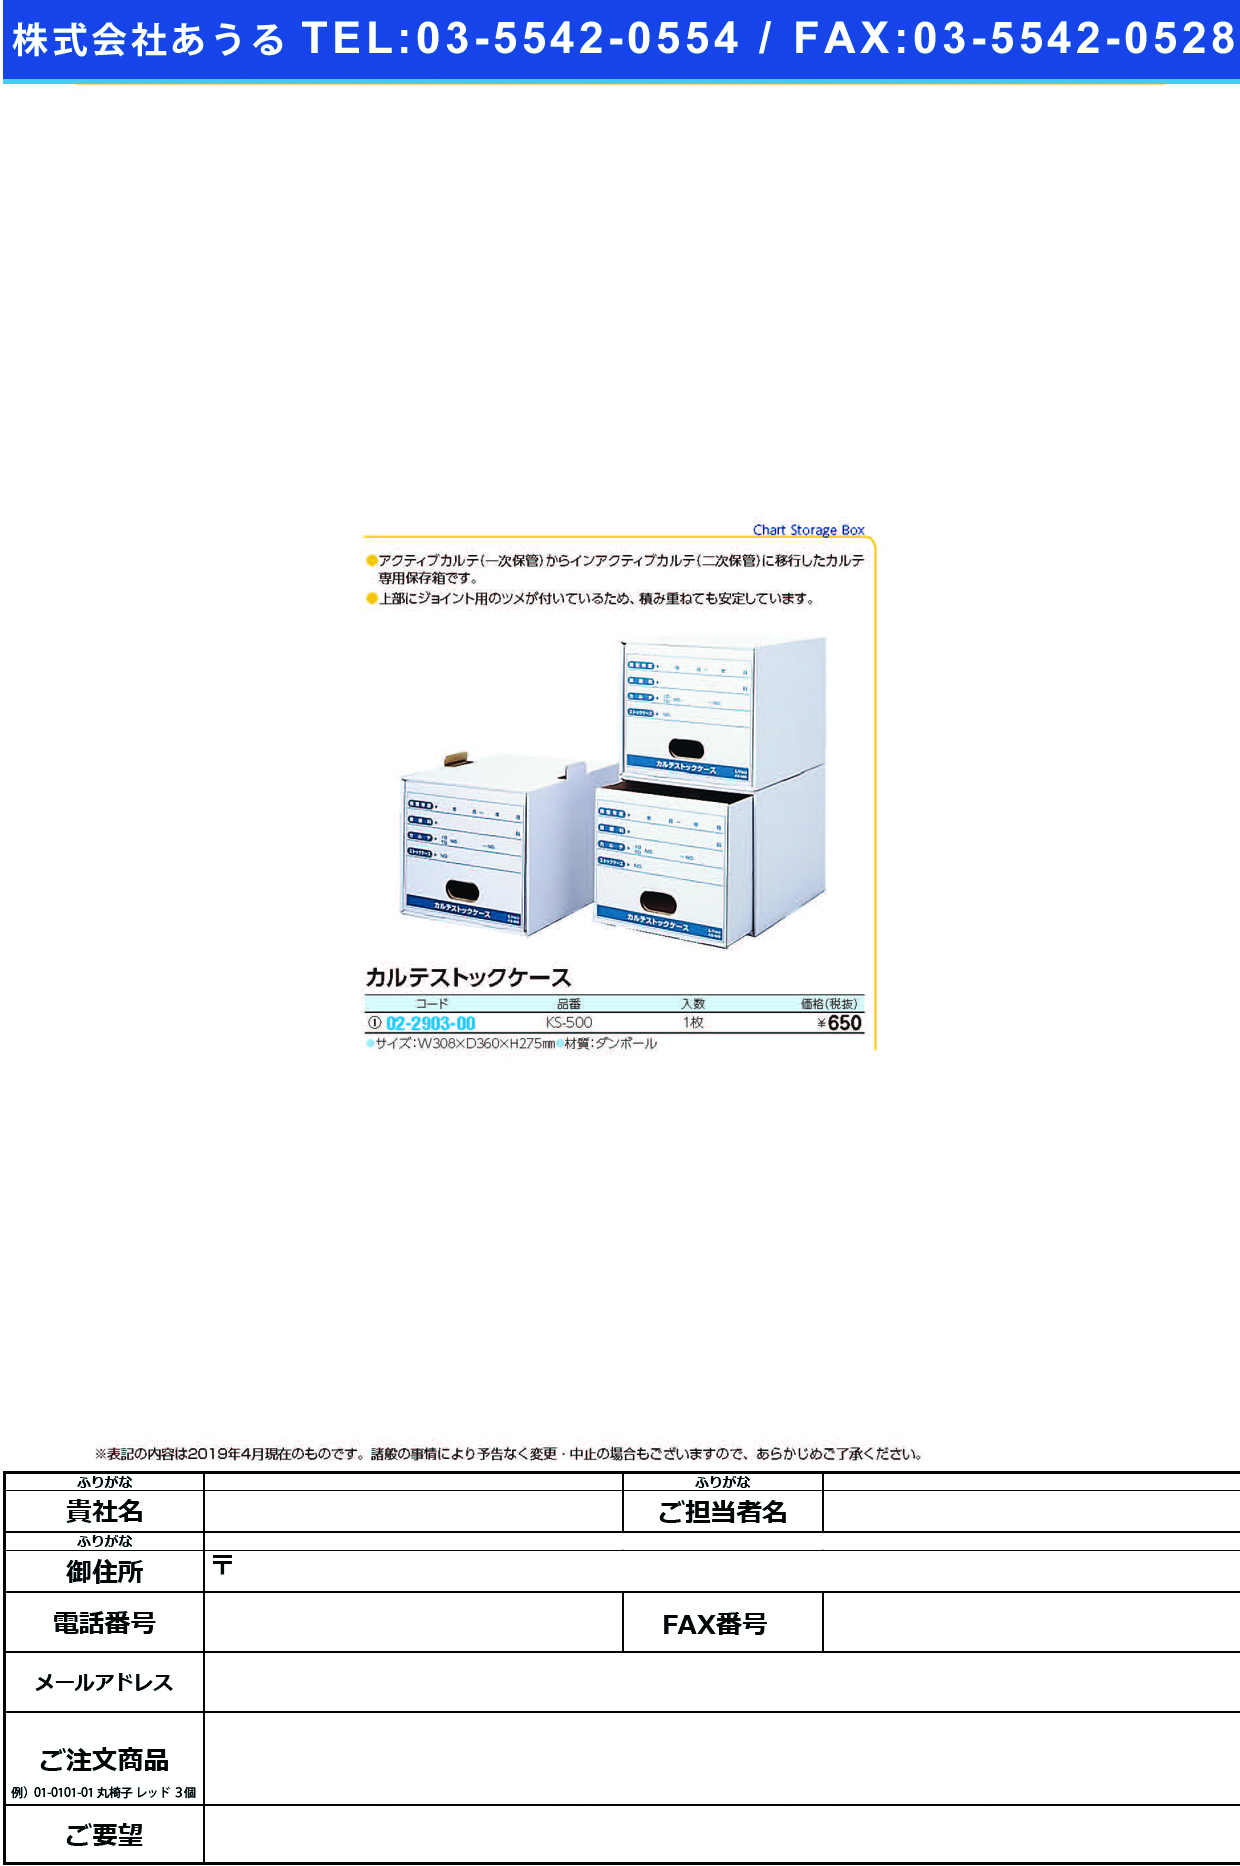 (02-2903-00)カルテストックケース KS-500 ｶﾙﾃｽﾄｯｸｹｰｽ(ケルン)【1個単位】【2019年カタログ商品】